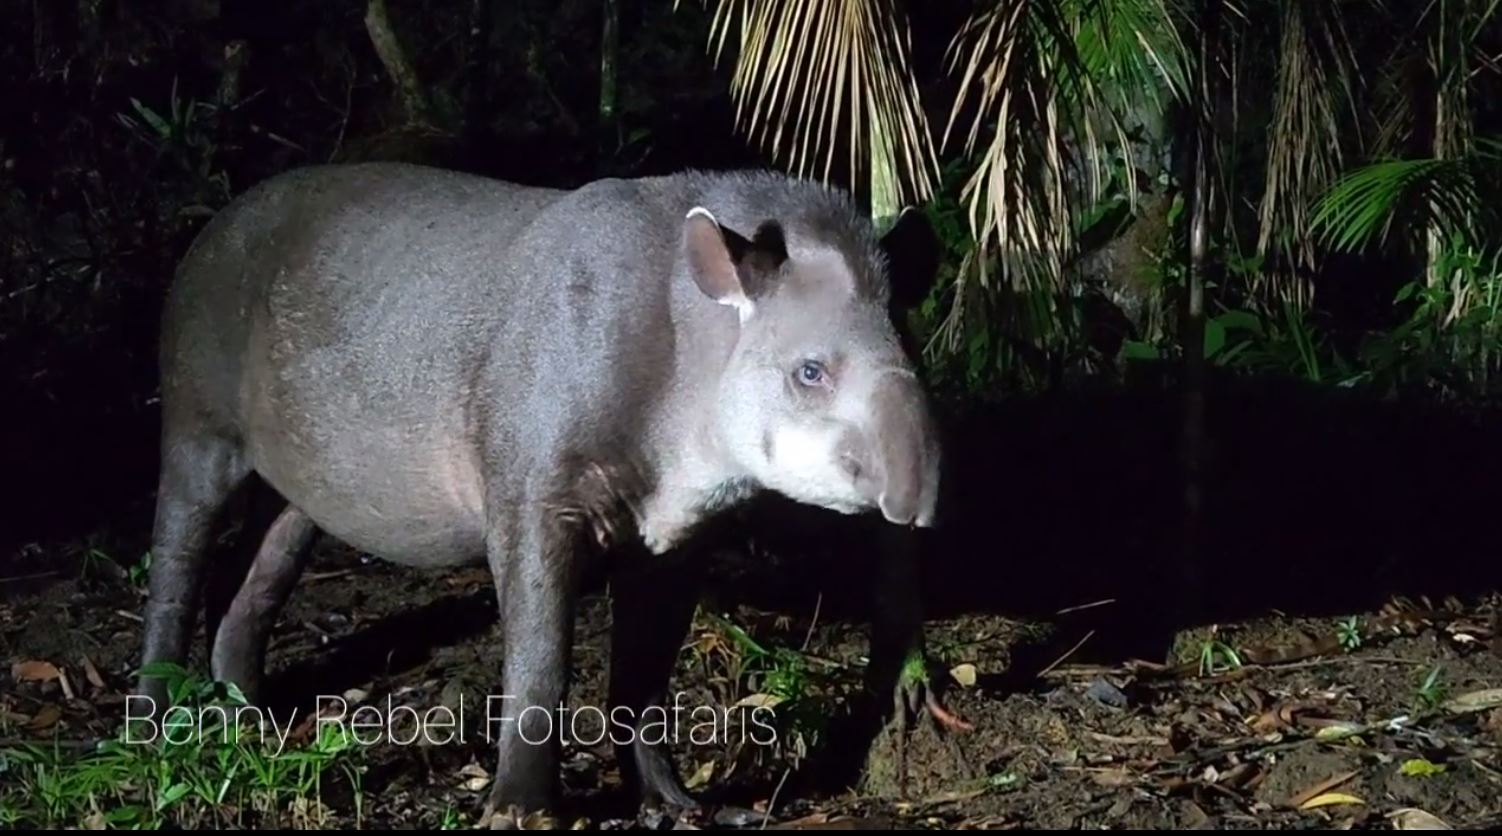 Wir bewundern gerade diese Tapir-Dame, die überhaupt nicht scheu ist. Wir befinden uns im brasilianischen Urwald